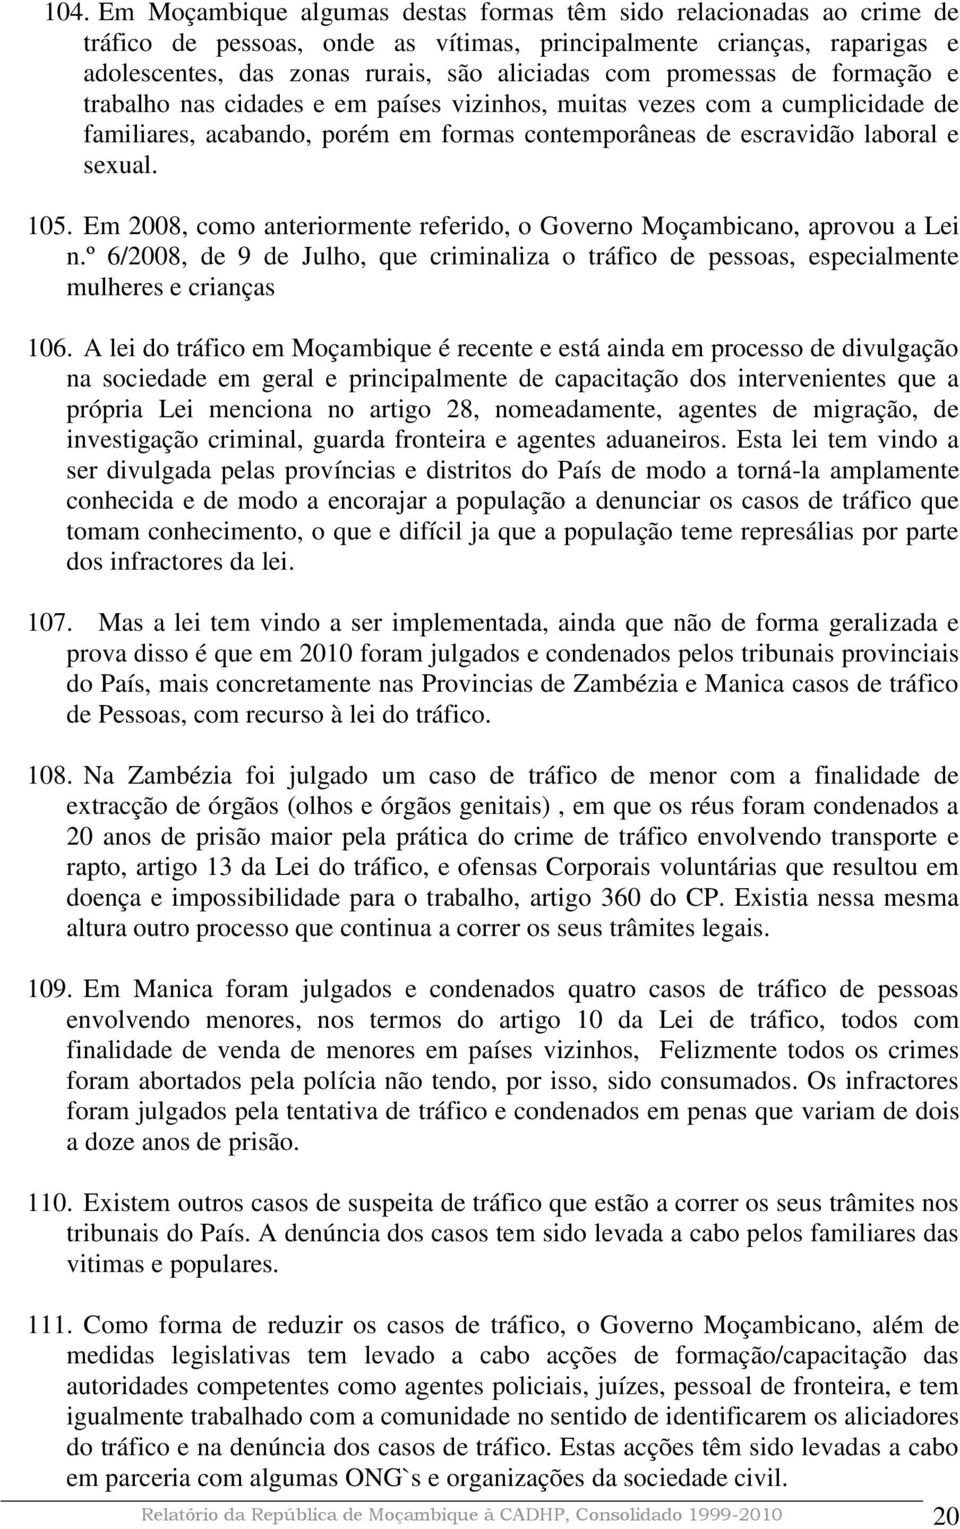 Em 2008, como anteriormente referido, o Governo Moçambicano, aprovou a Lei n.º 6/2008, de 9 de Julho, que criminaliza o tráfico de pessoas, especialmente mulheres e crianças 106.